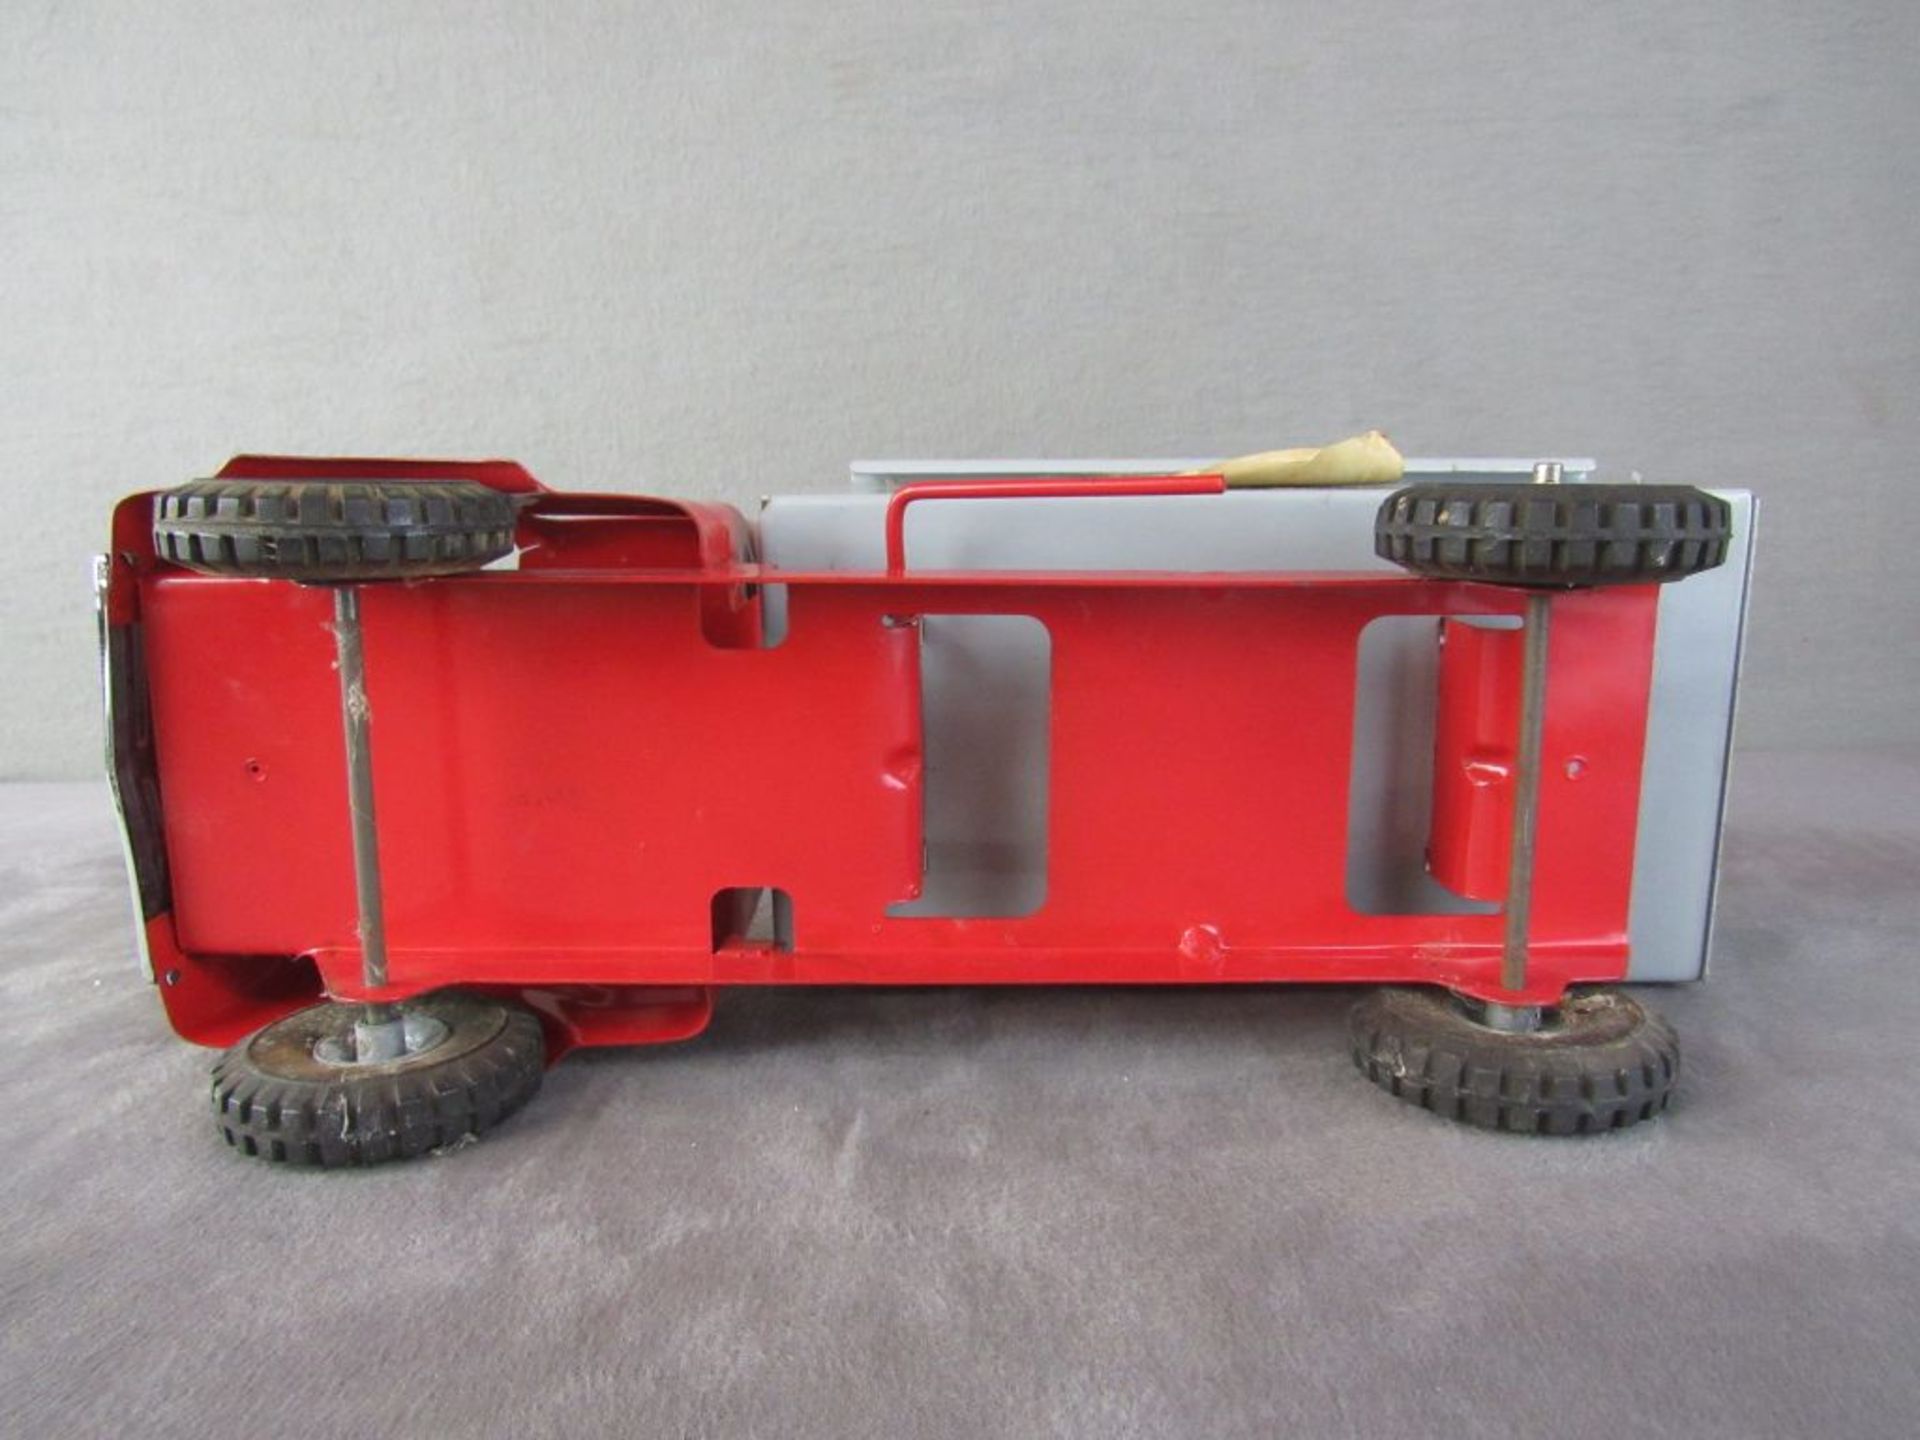 Blechspielzeug LKW Englischer Hersteller 50er Jahre mit Kippfunktion 37cm lang - Image 6 of 6